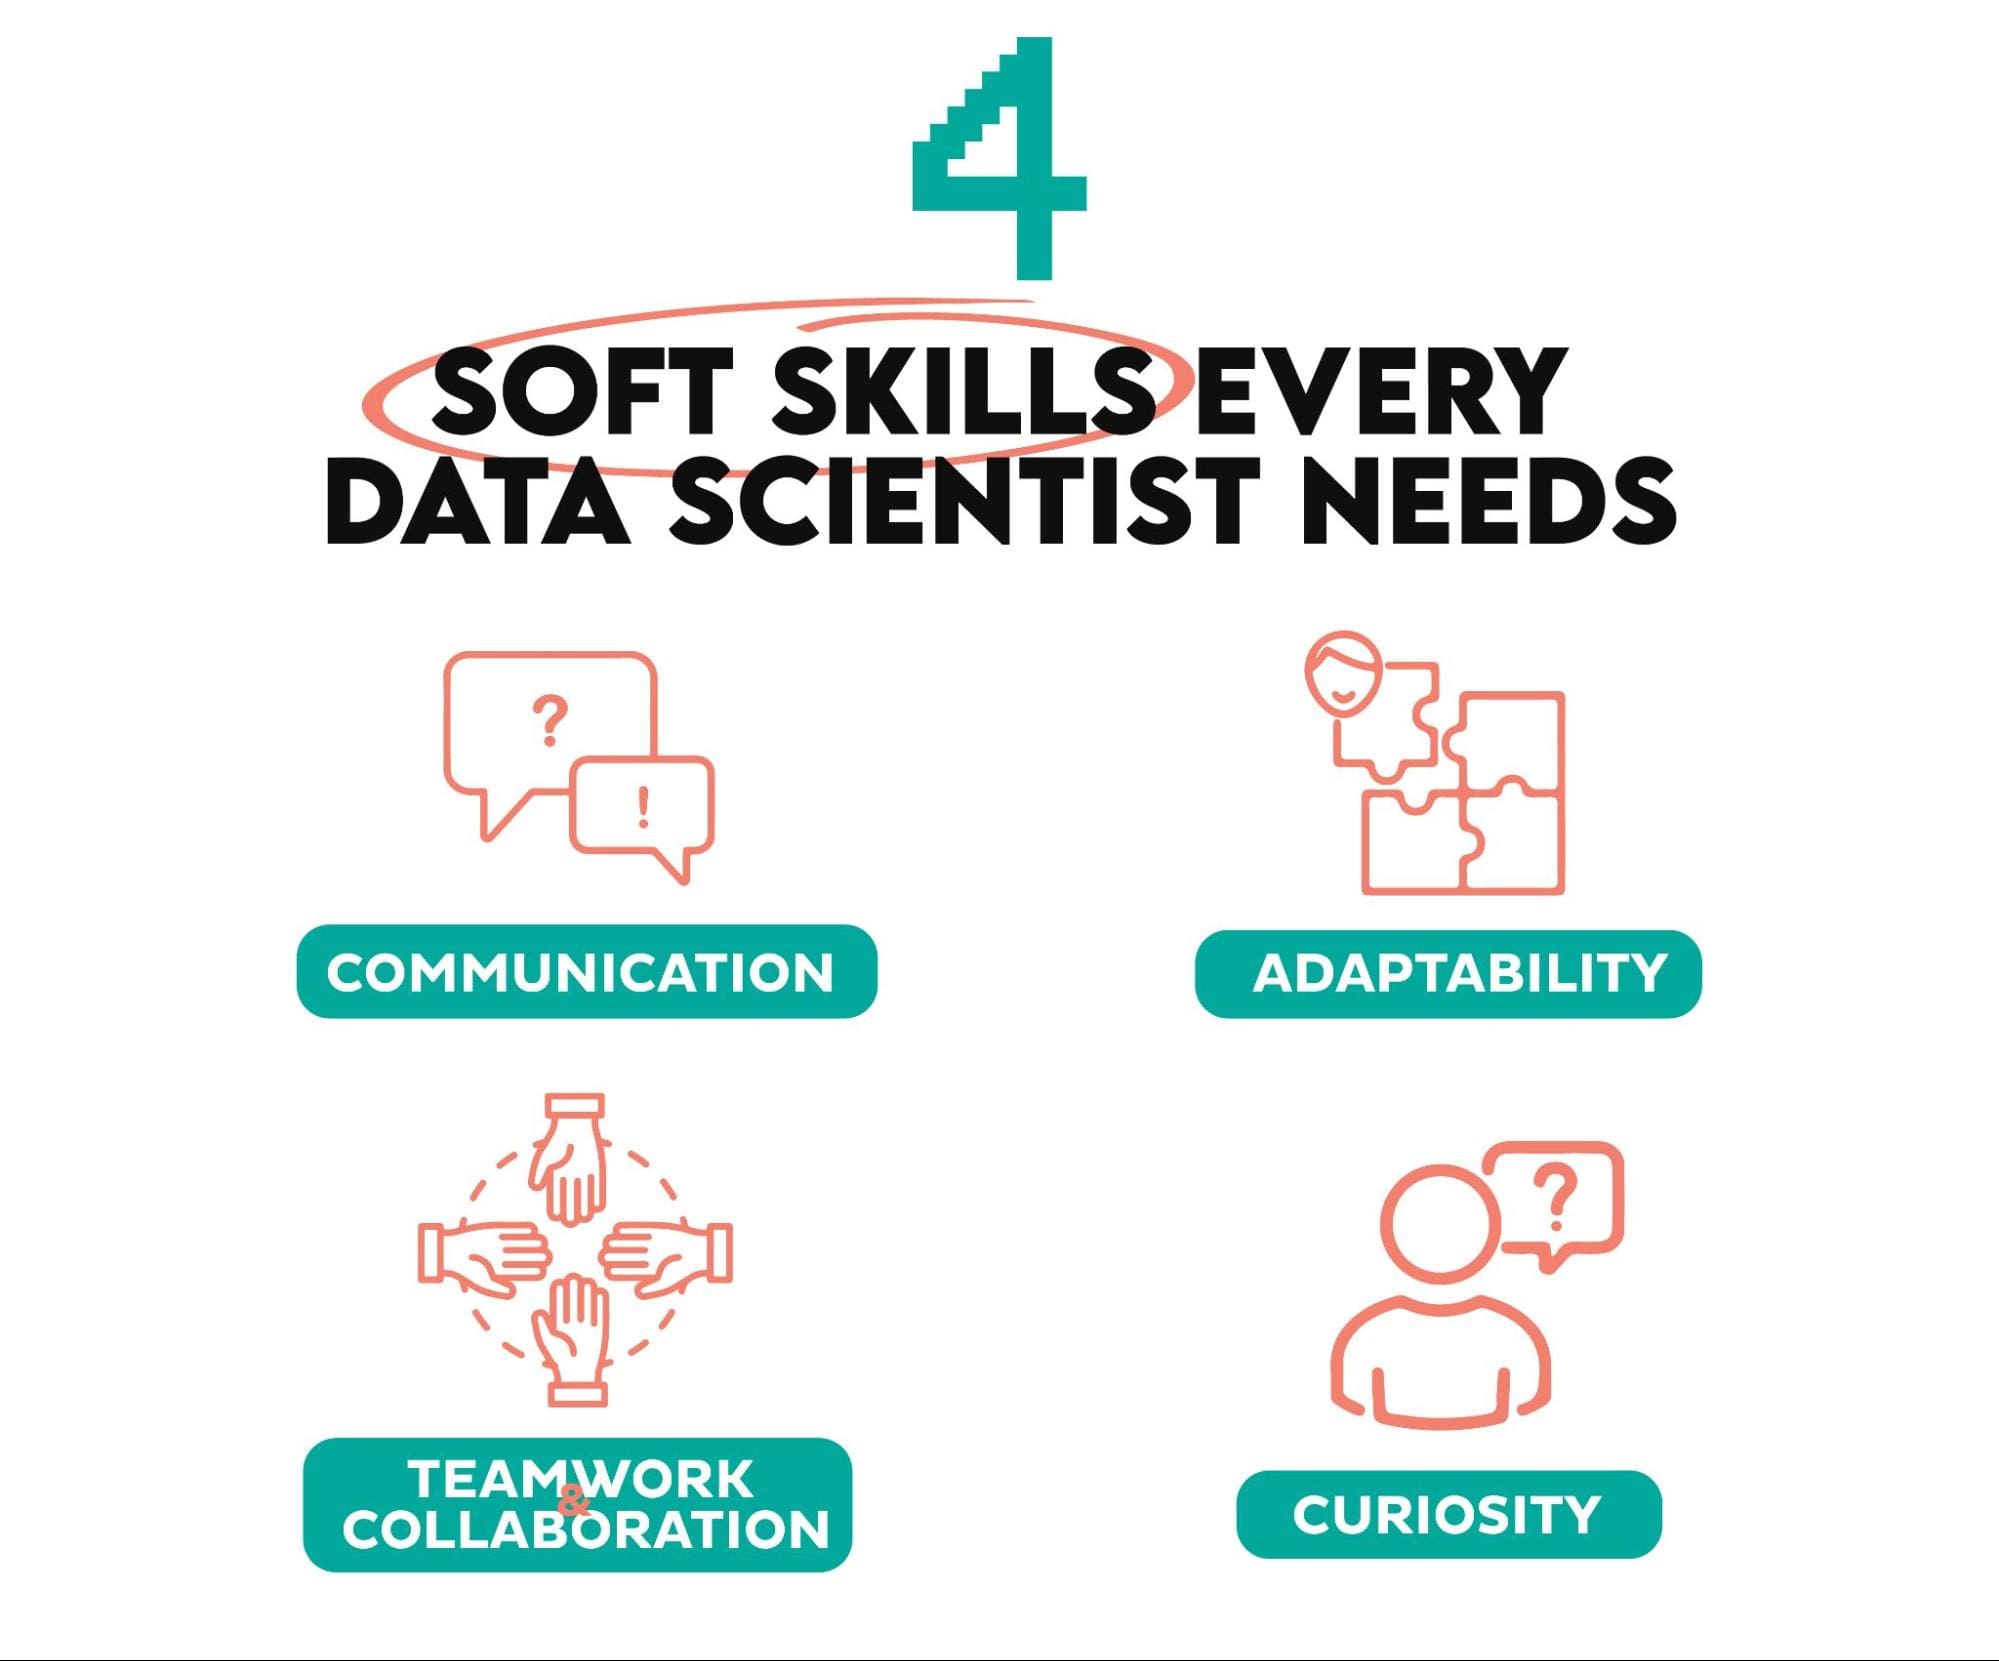 सॉफ्ट स्किल्स की आवश्यकता हर डेटा वैज्ञानिक को होती है